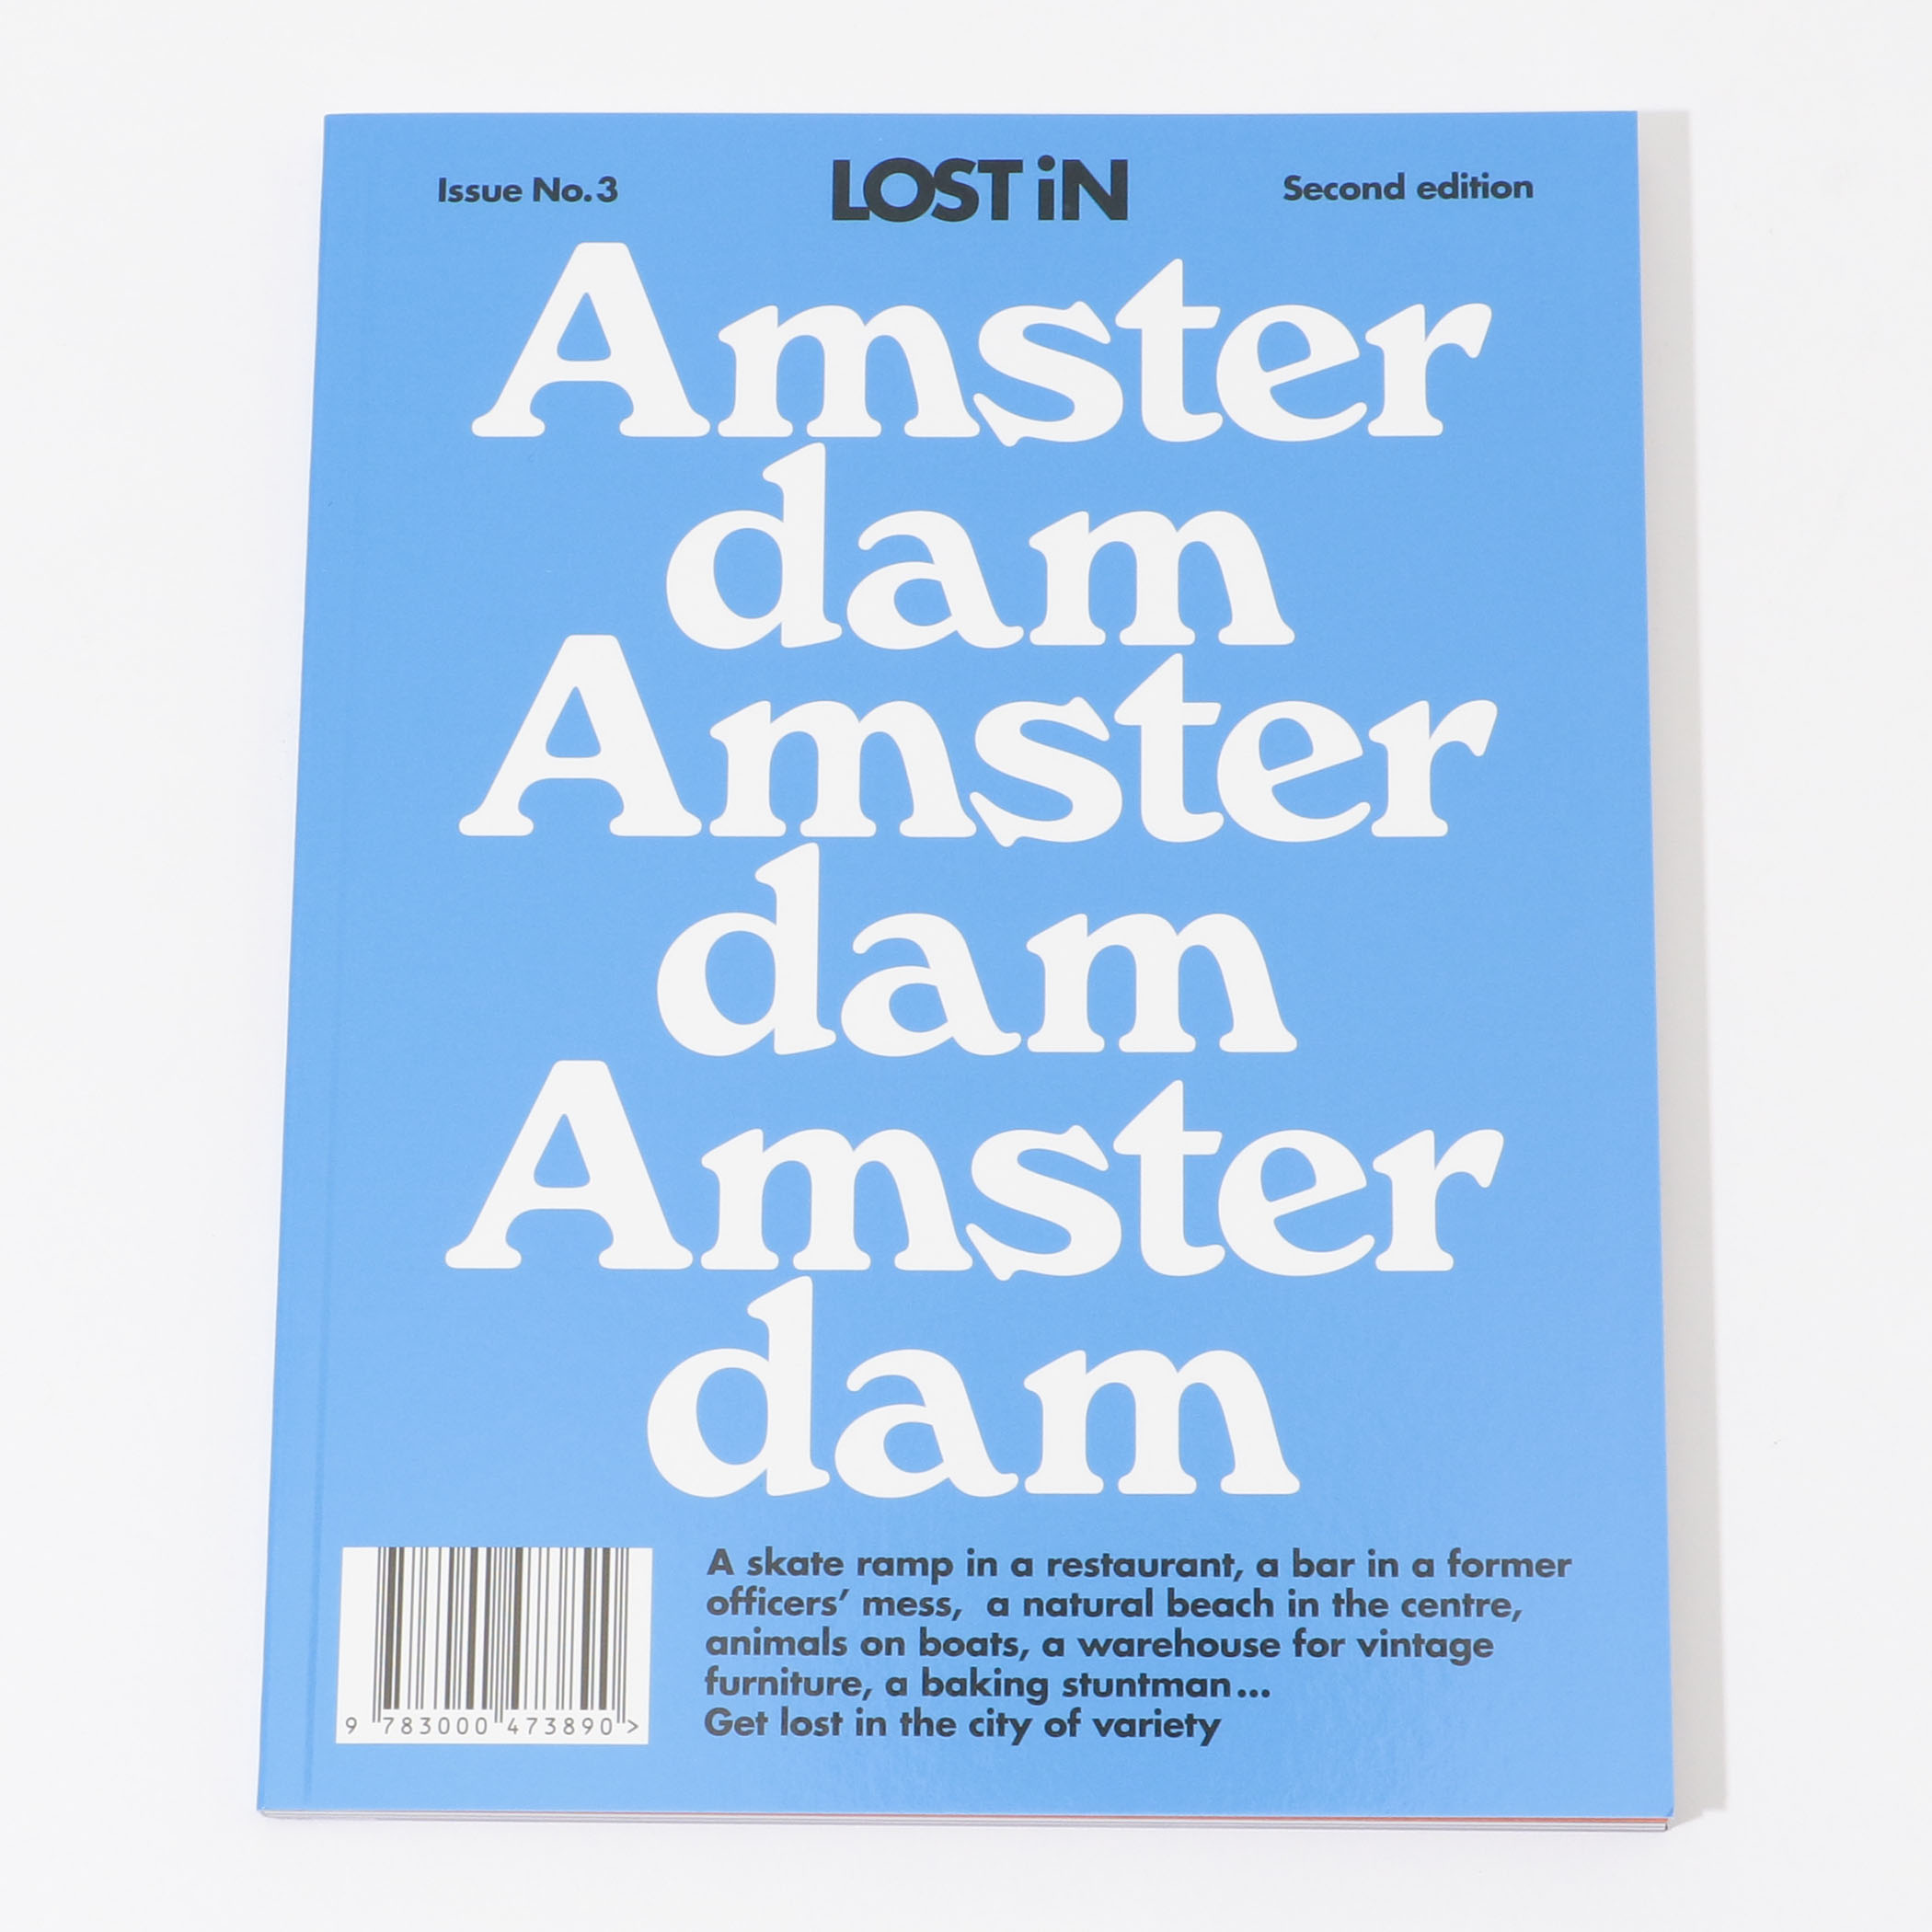 LOST IN Amsterdam